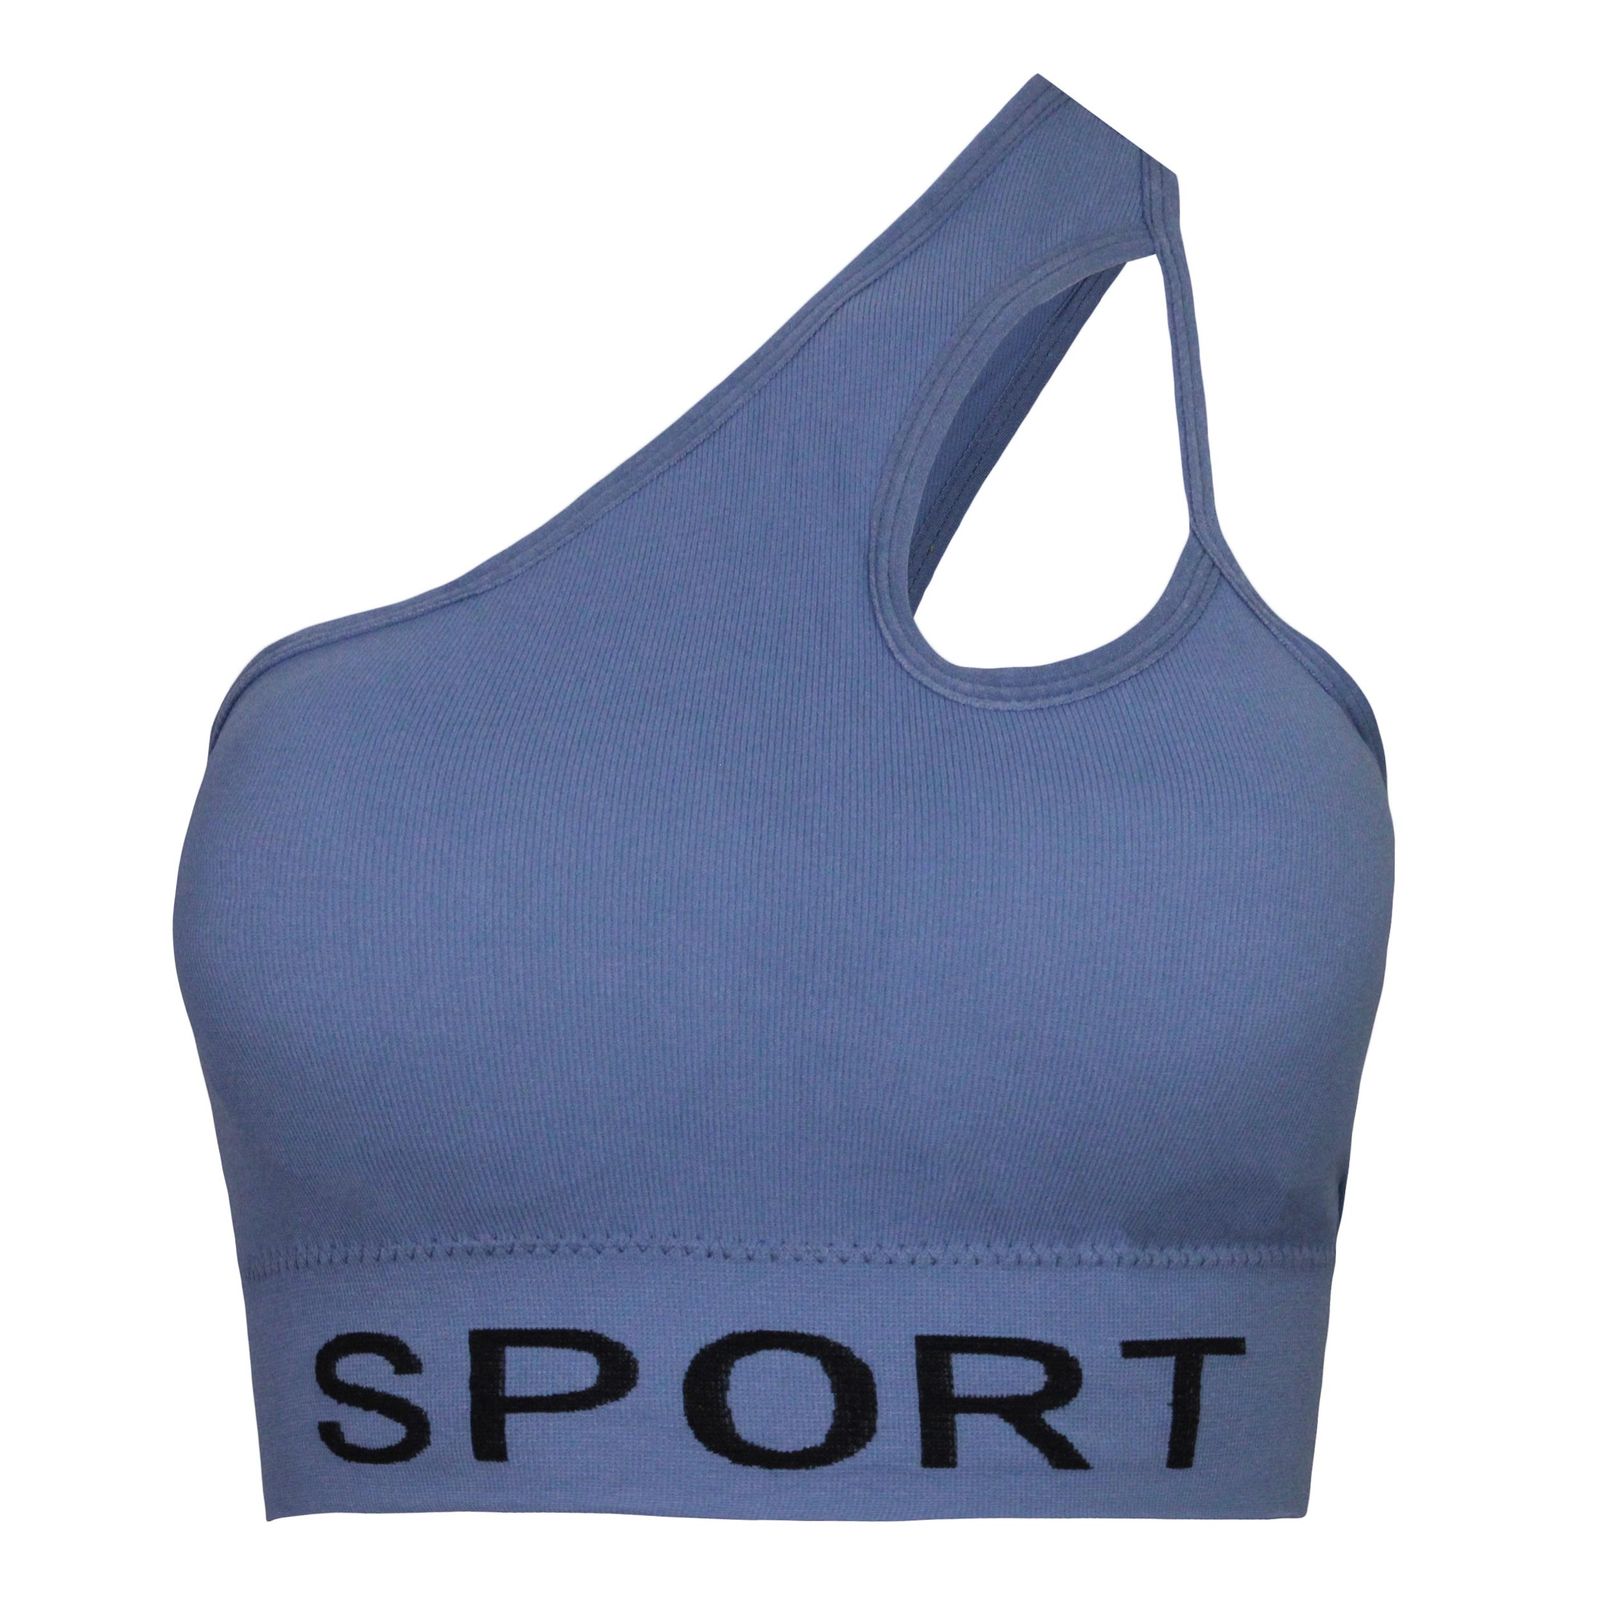 ست نیم تنه و شلوارک ورزشی زنانه ماییلدا مدل 4465 رنگ آبی -  - 2